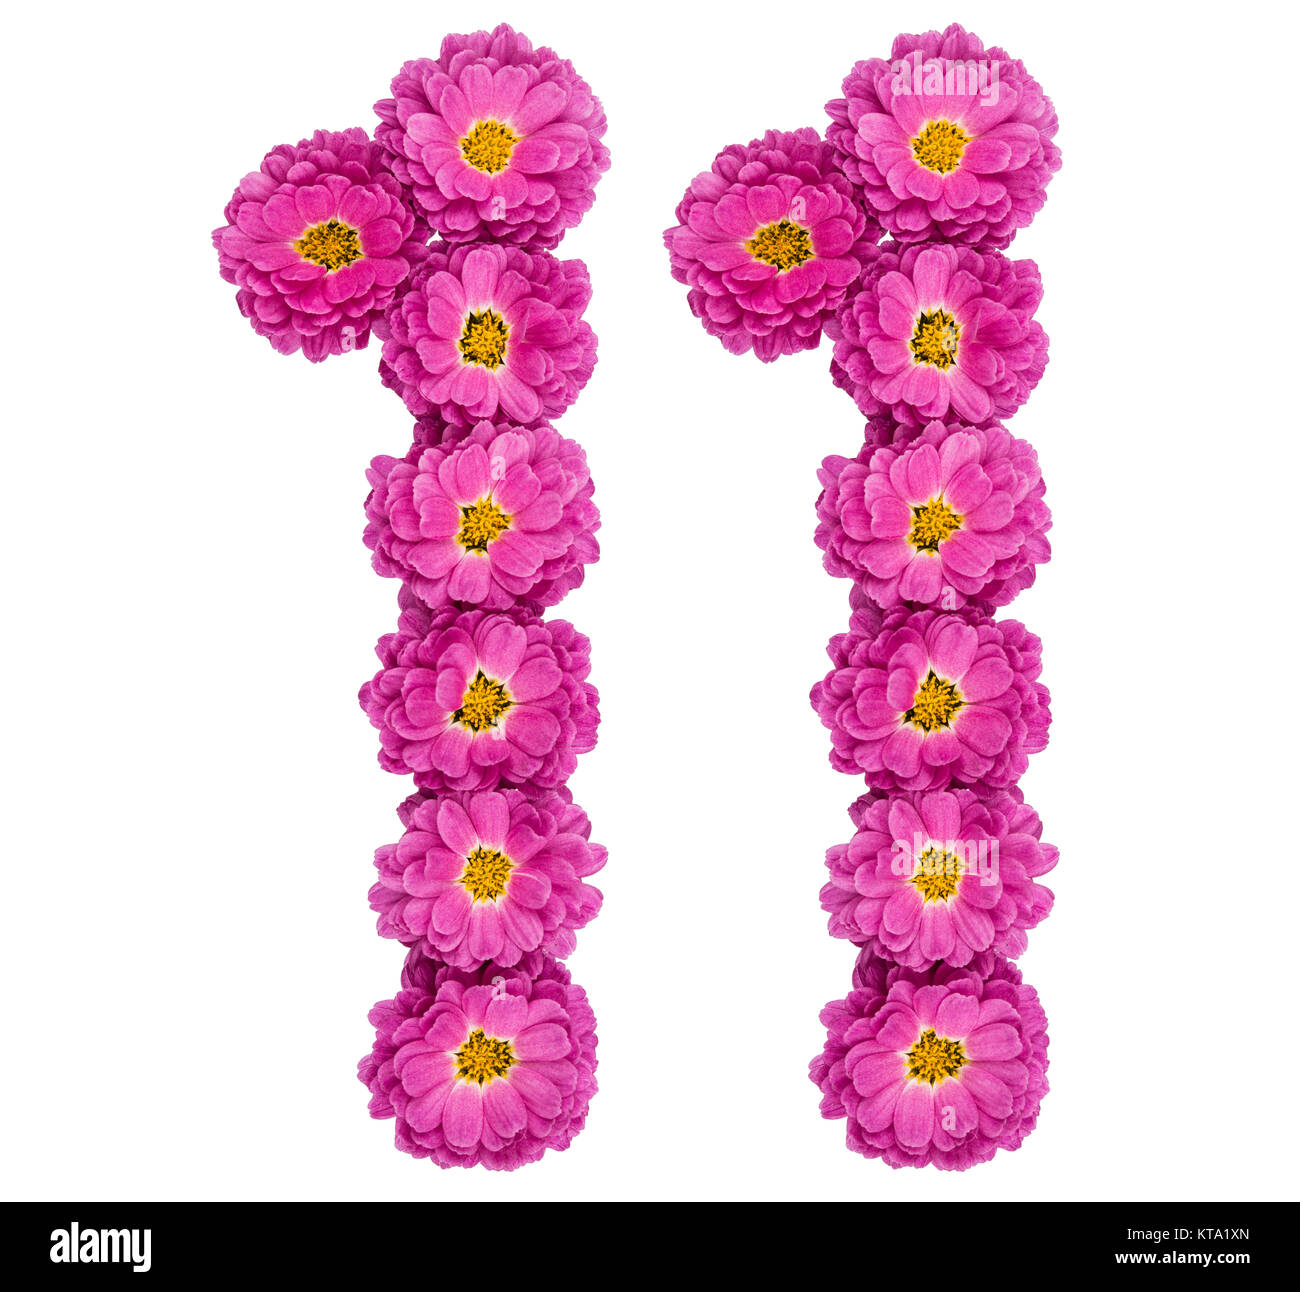 Numero arabo 11, undici, dai fiori di crisantemo, isolato su sfondo bianco Foto Stock